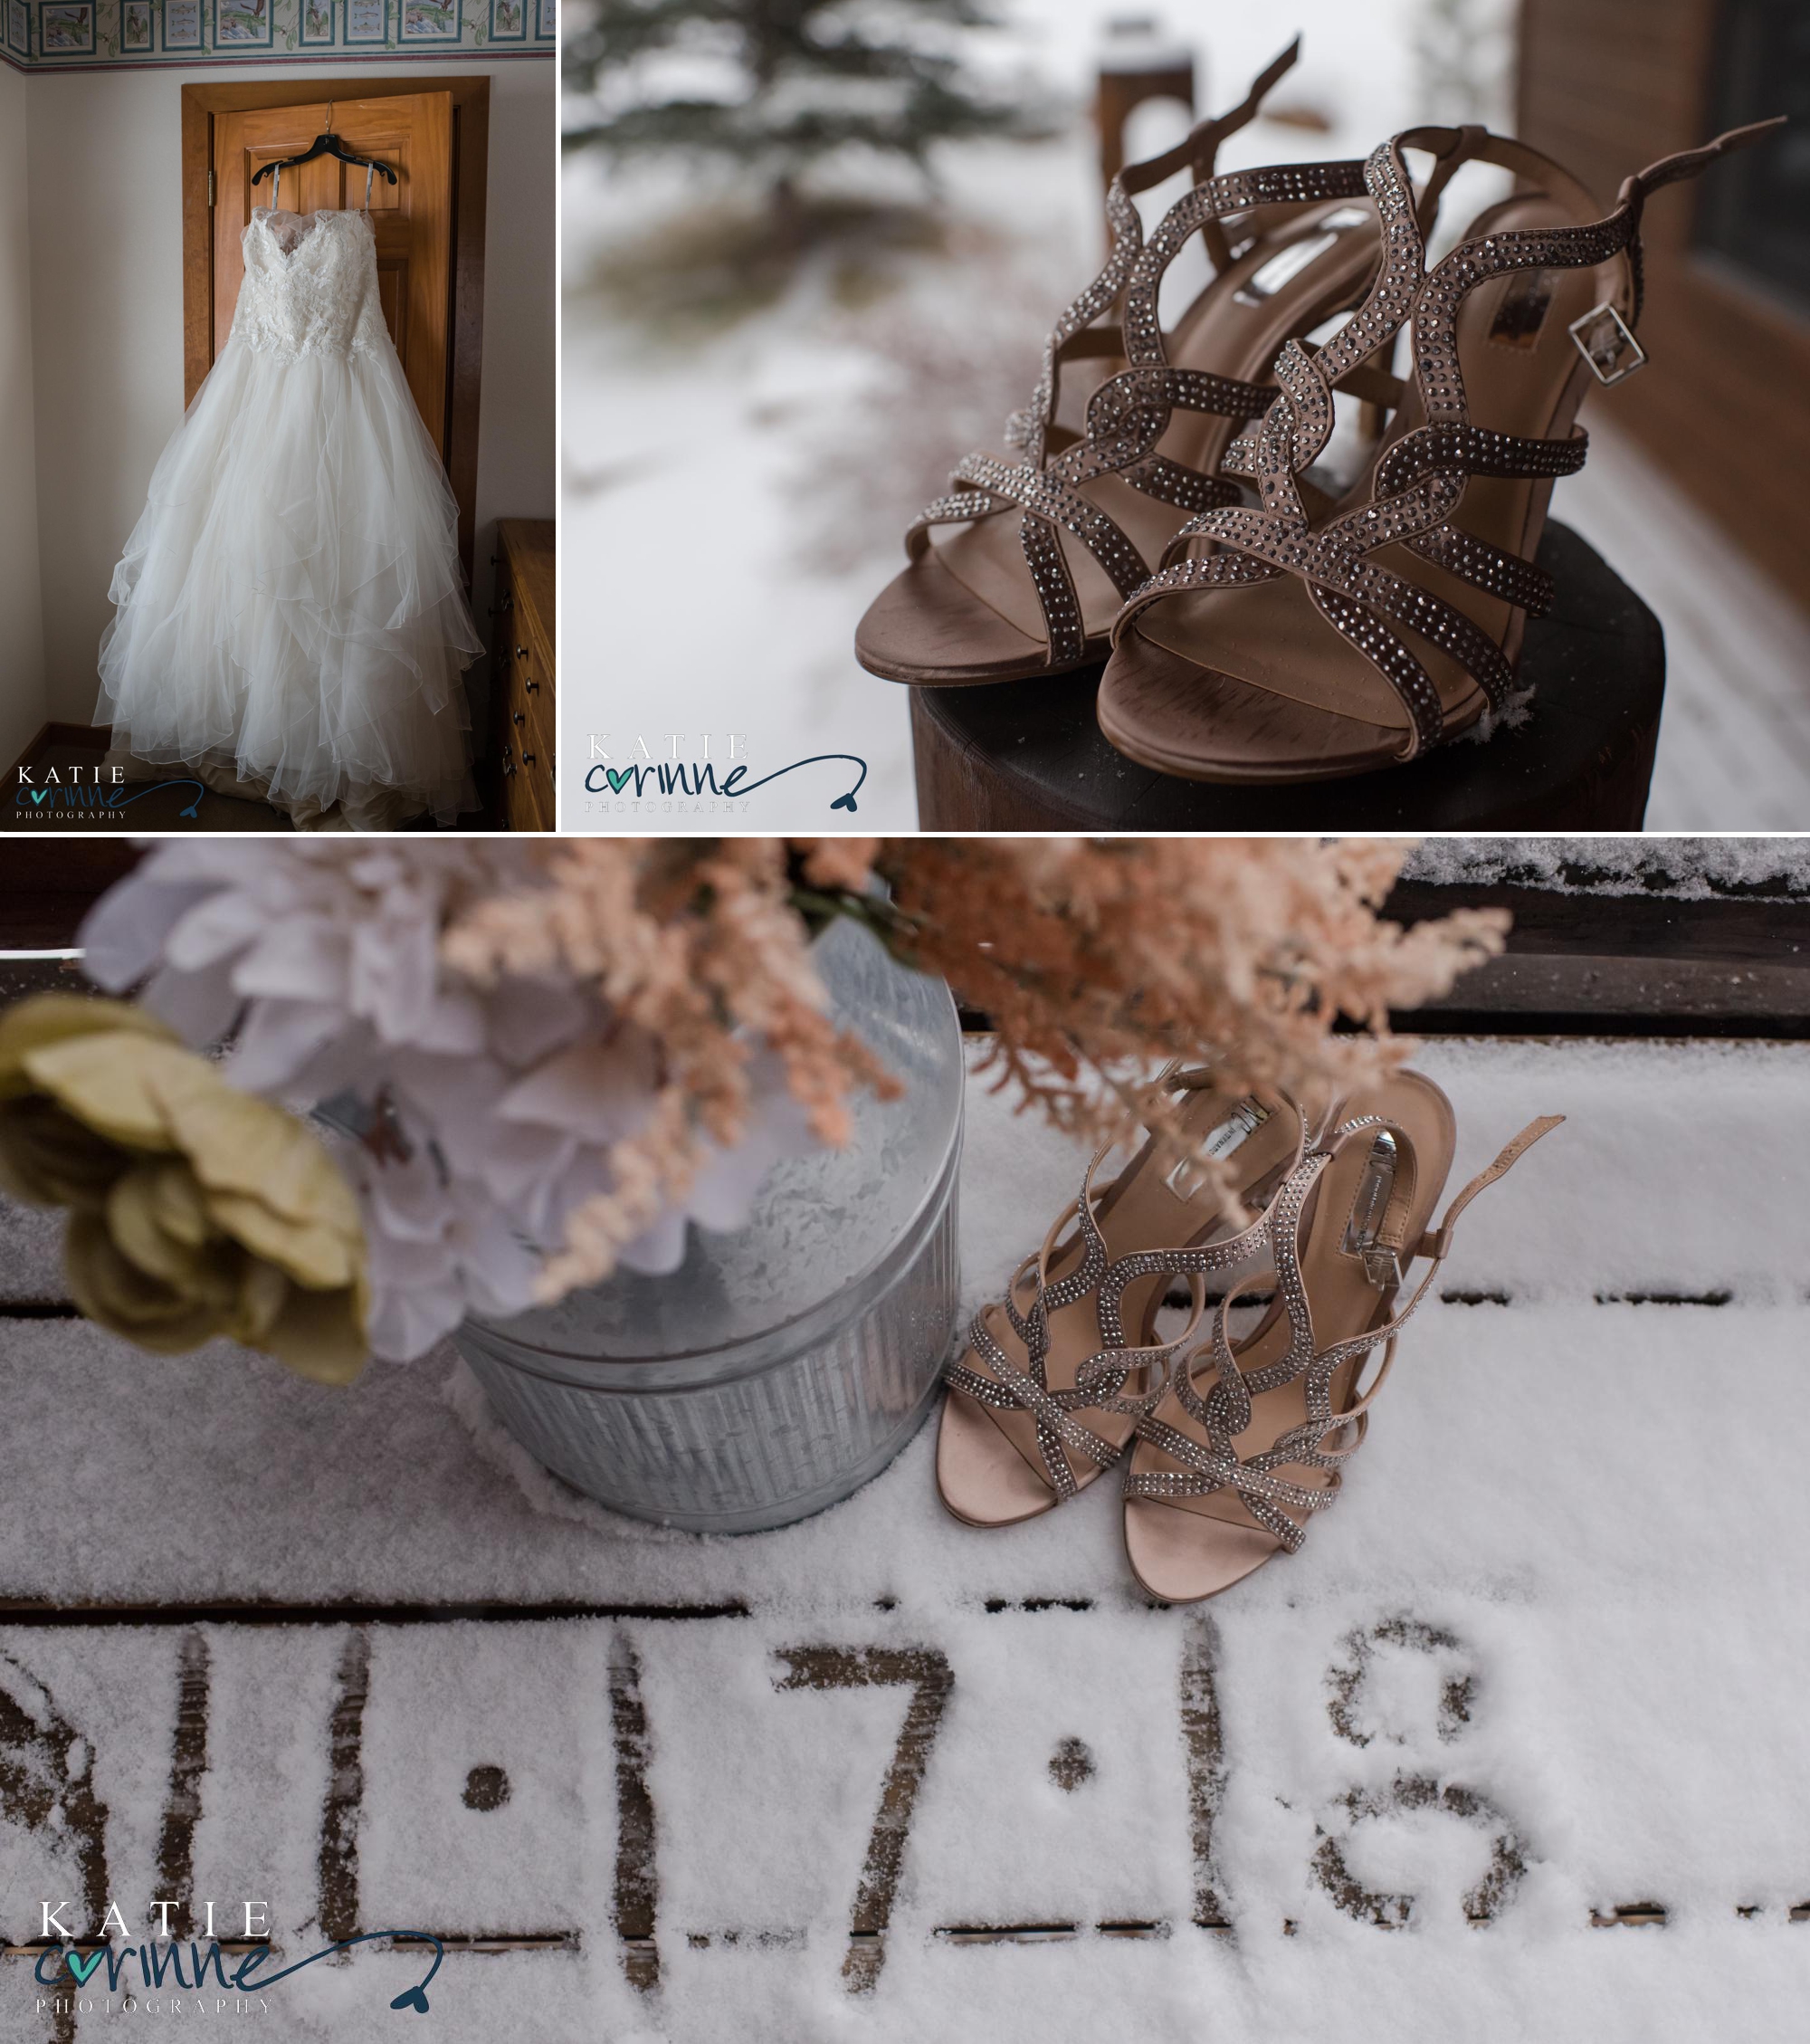 Snowy Winter Wedding details